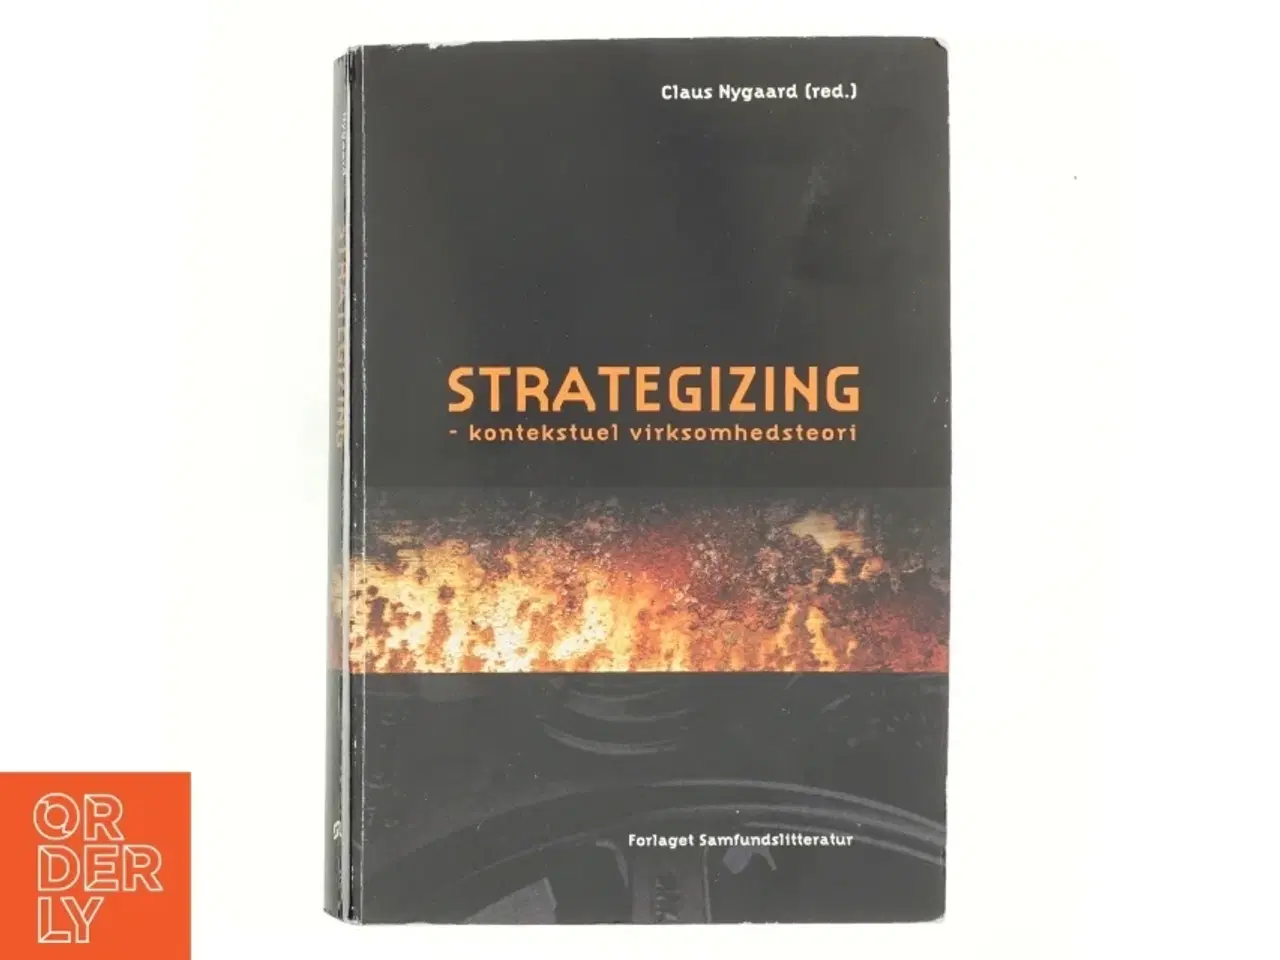 Billede 1 - Strategizing - kontekstuel virksomhedsteori af Claus Nygaard (f. 1968-10-31) (Bog)